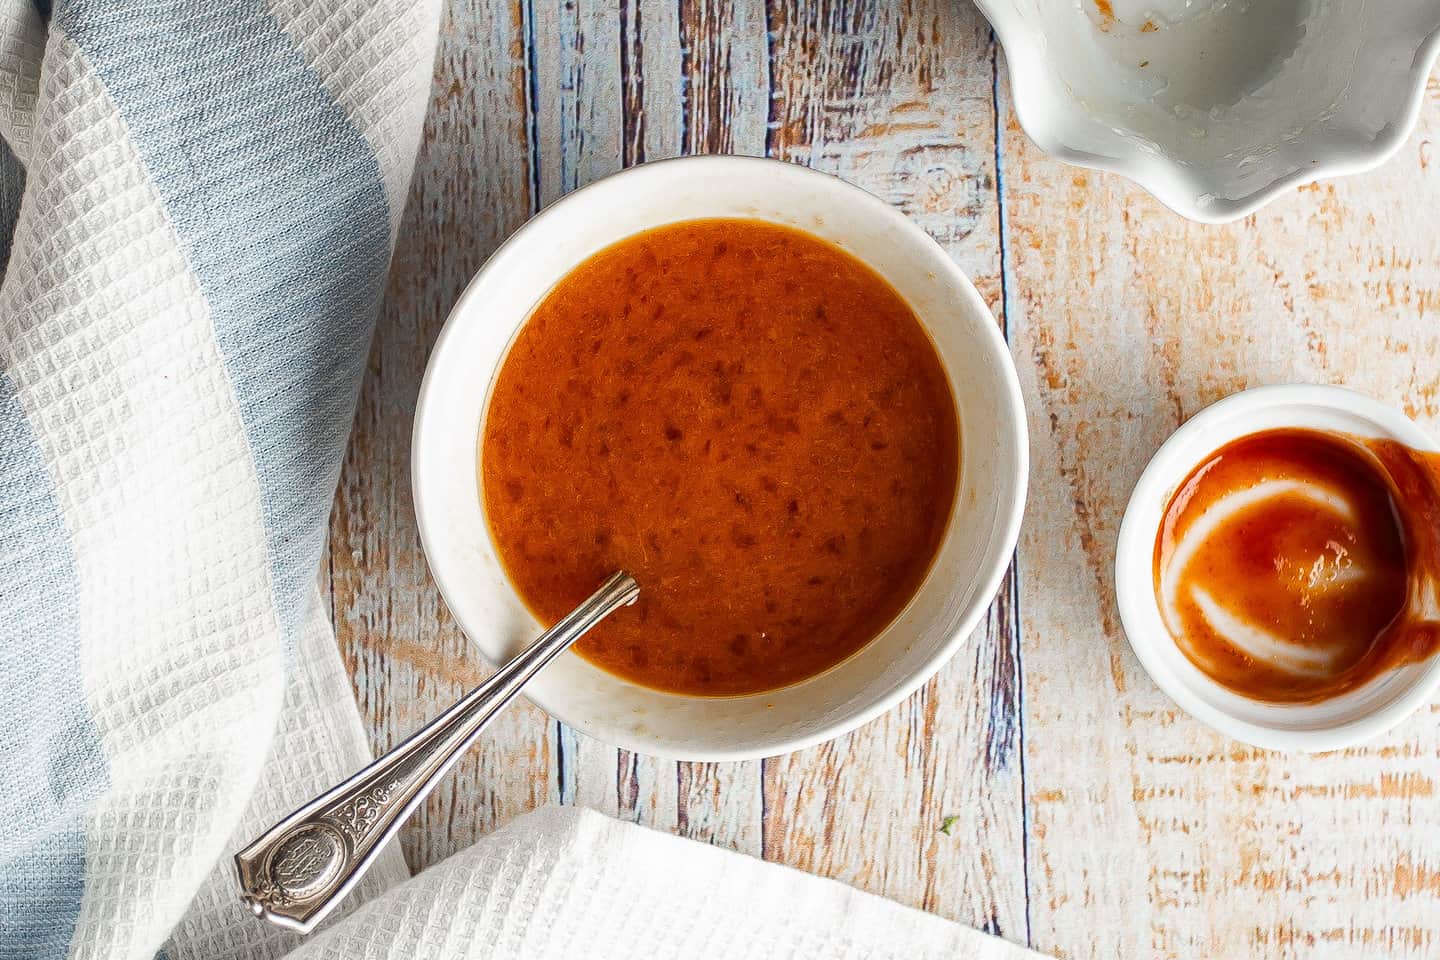 Orange Sriracha glaze in a small white bowl.